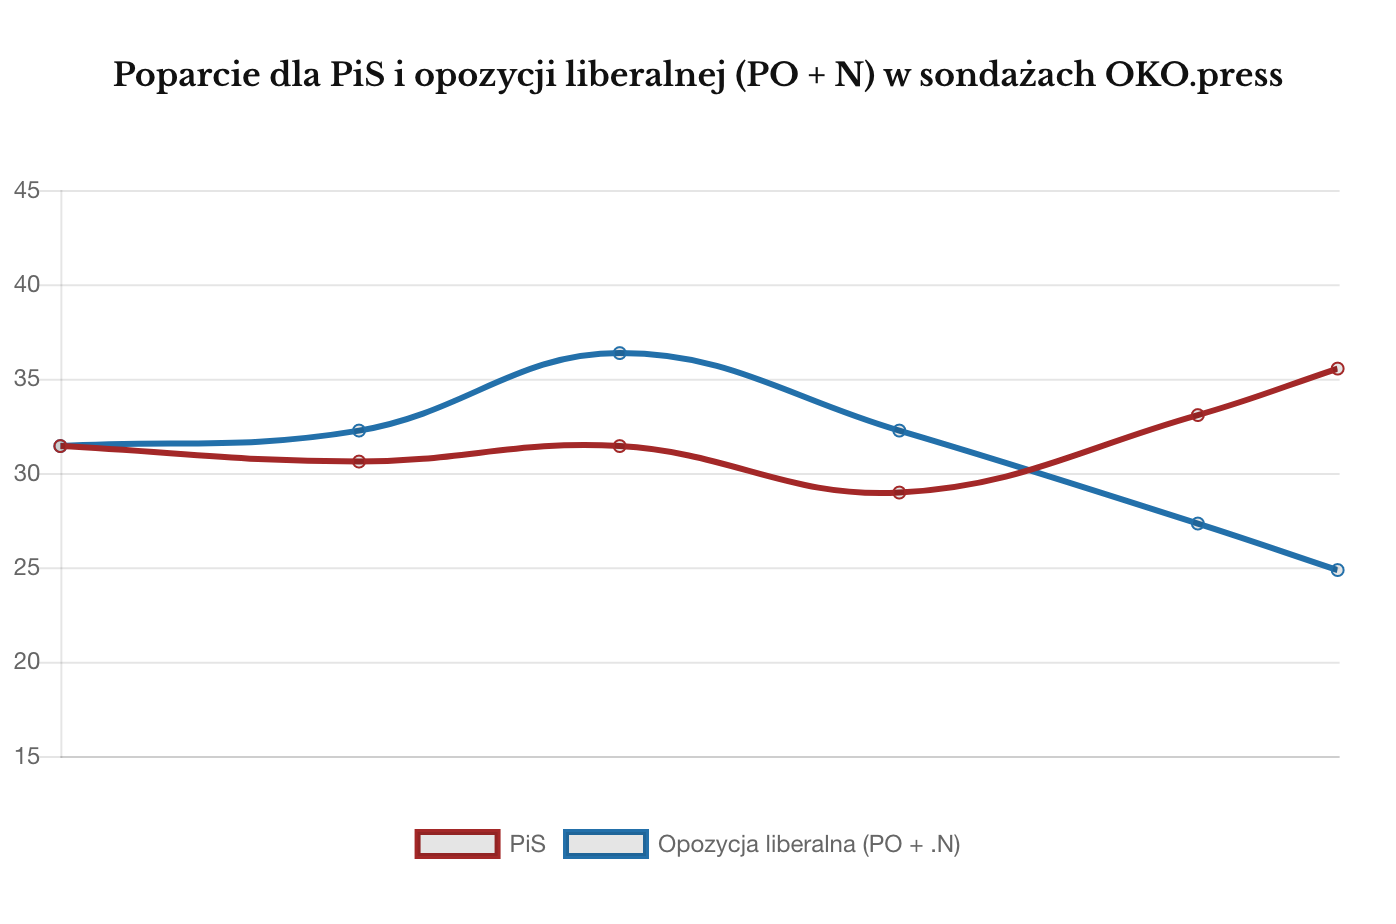 IPSOS sierpień 2017 poparcie dla PiS kontra opozycja w sondażach OKO.press